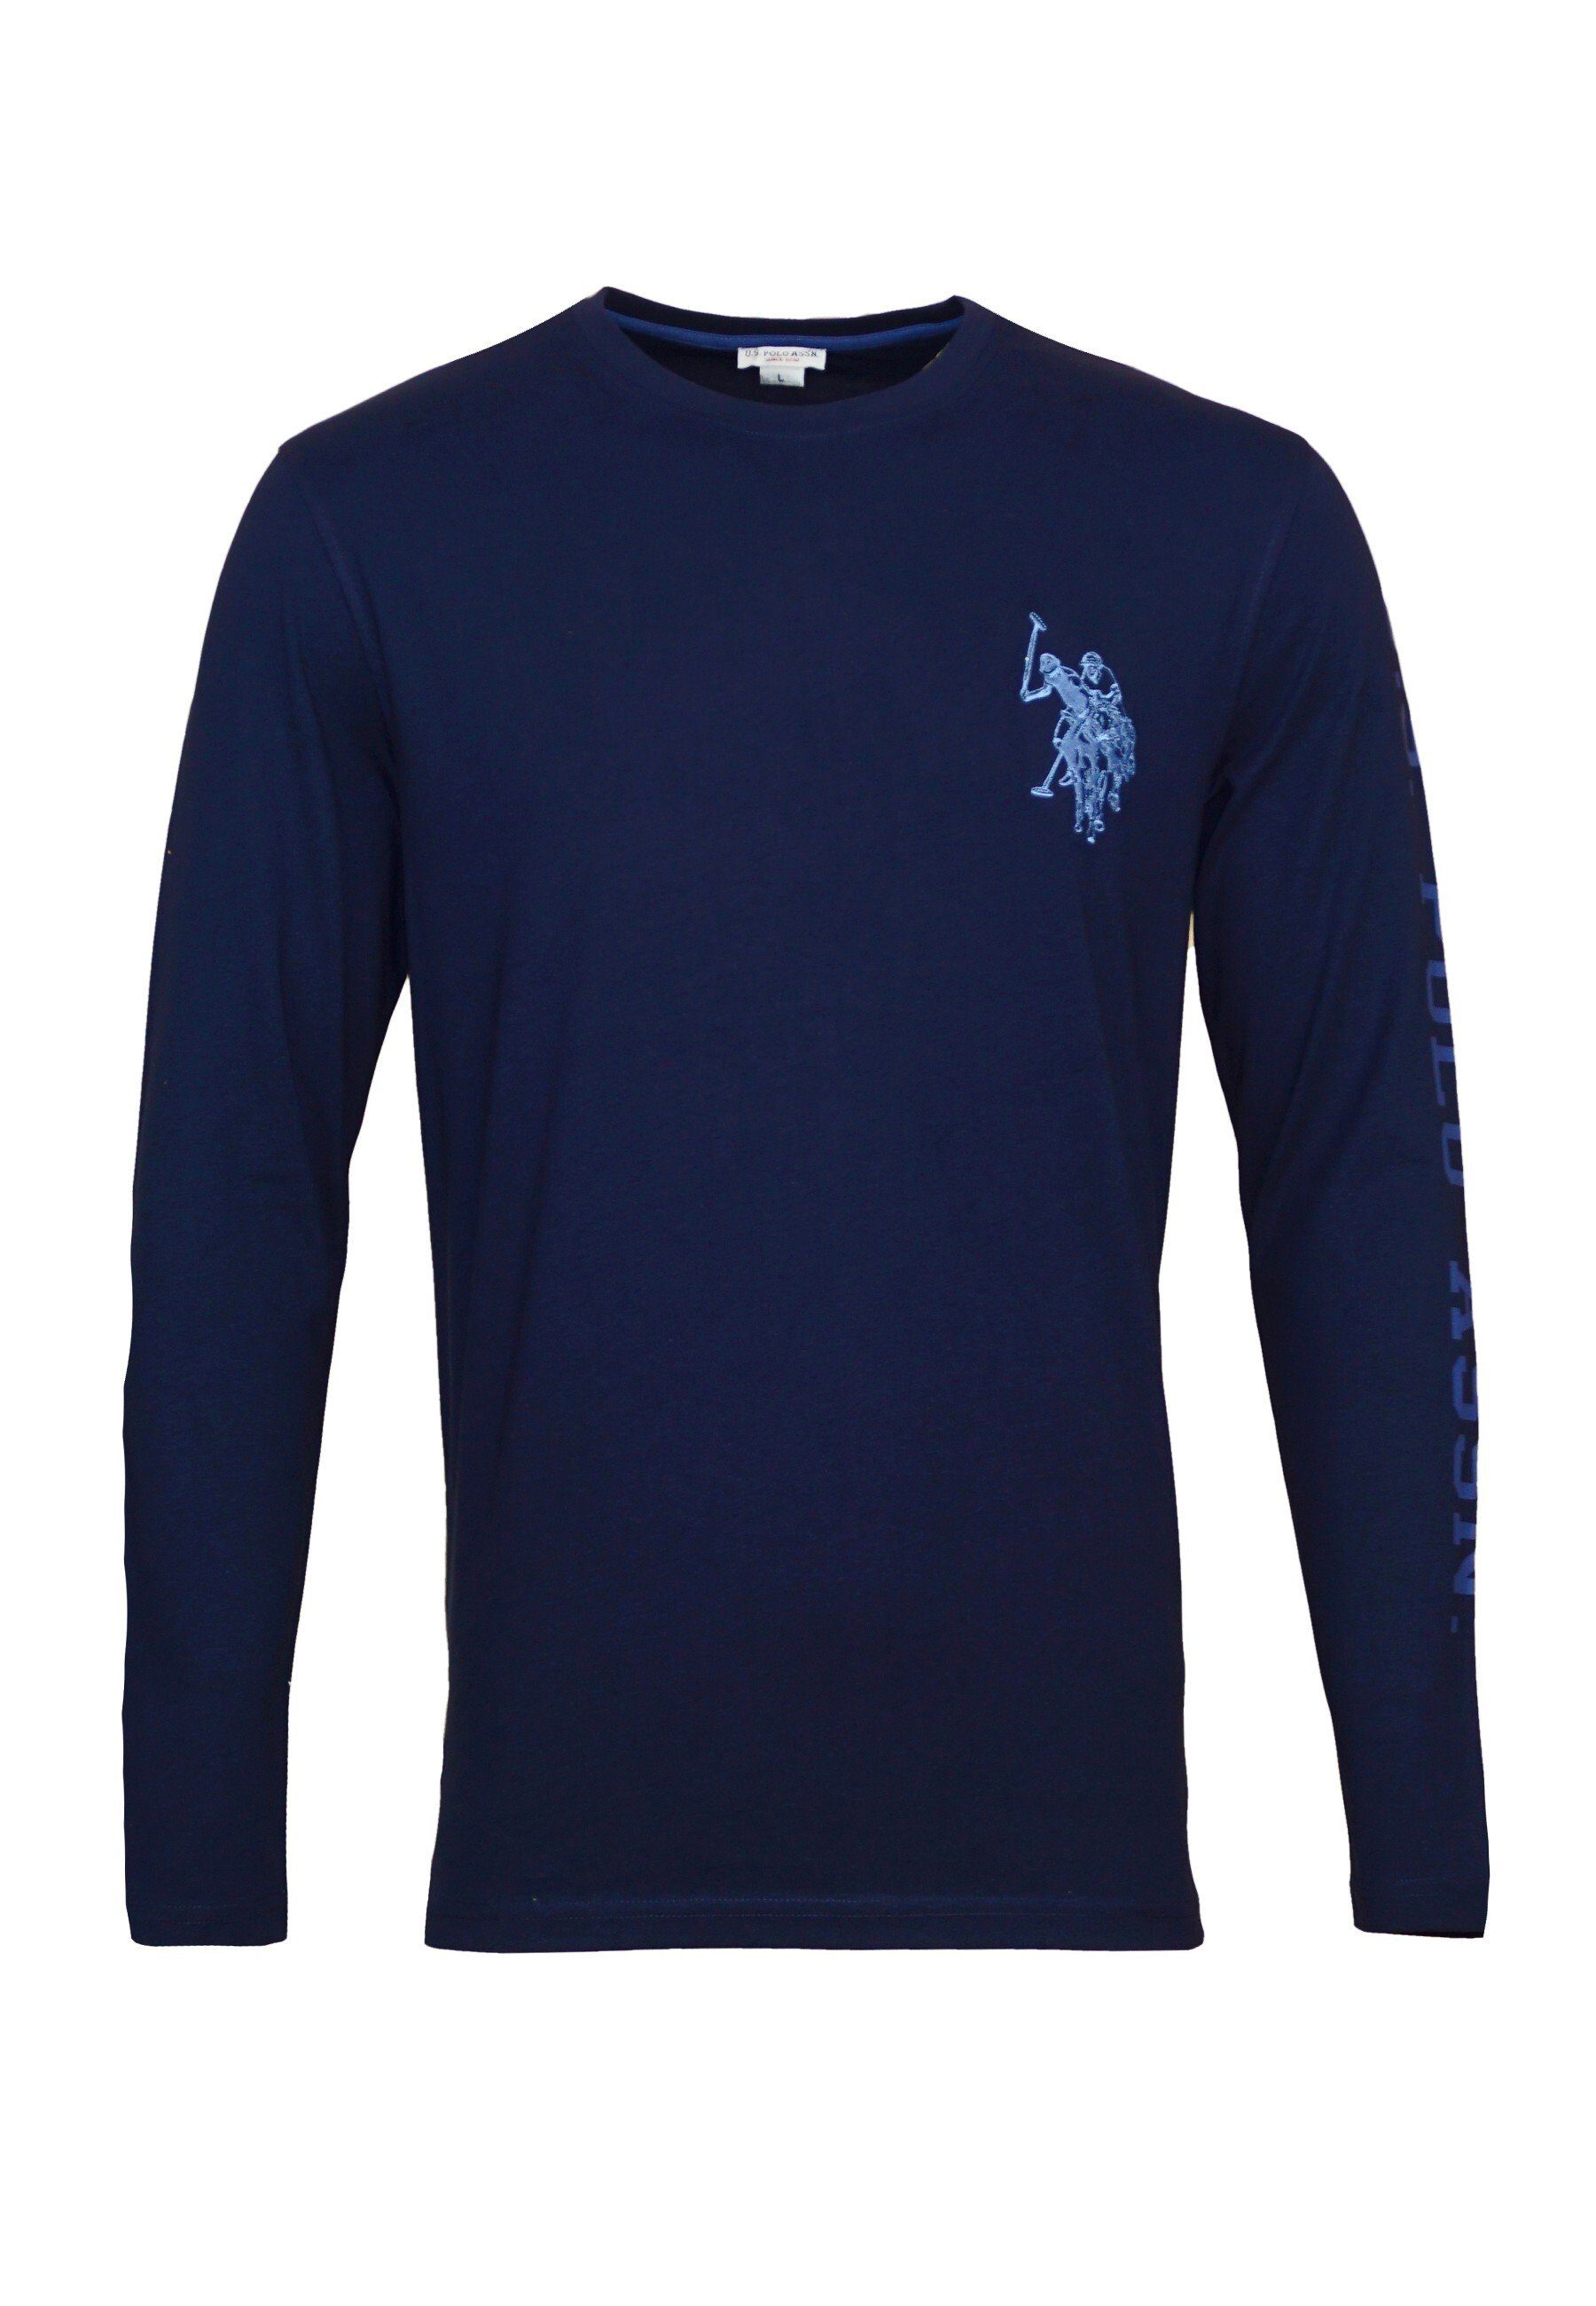 Shirt R-Neck dunkelblau Polo Assn Longsleeve Longsleeve U.S.